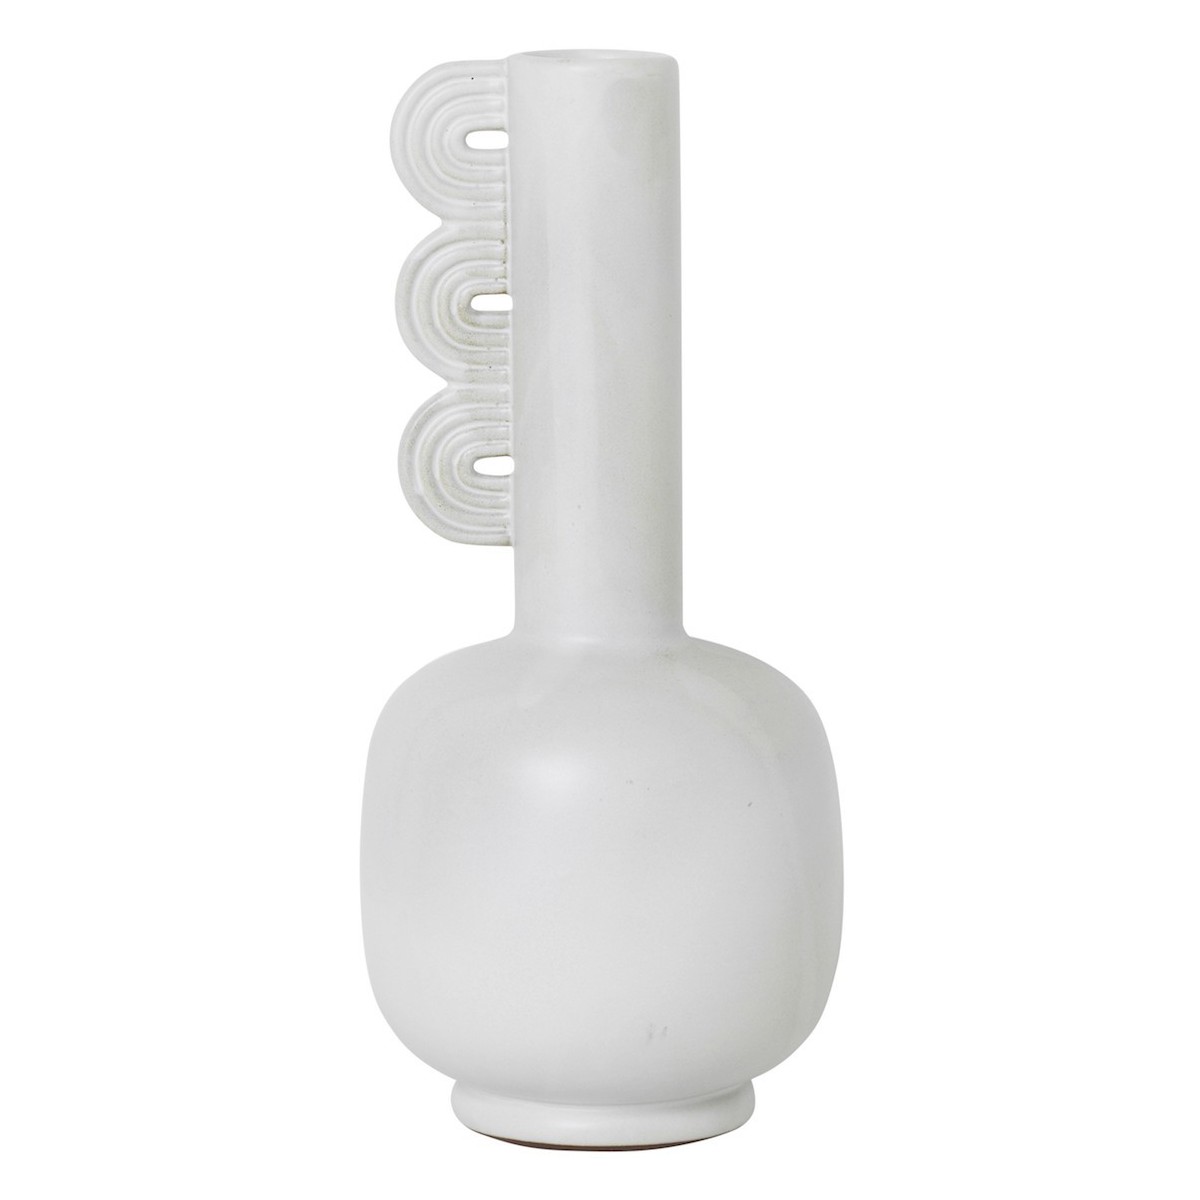 Clio - Muses vase